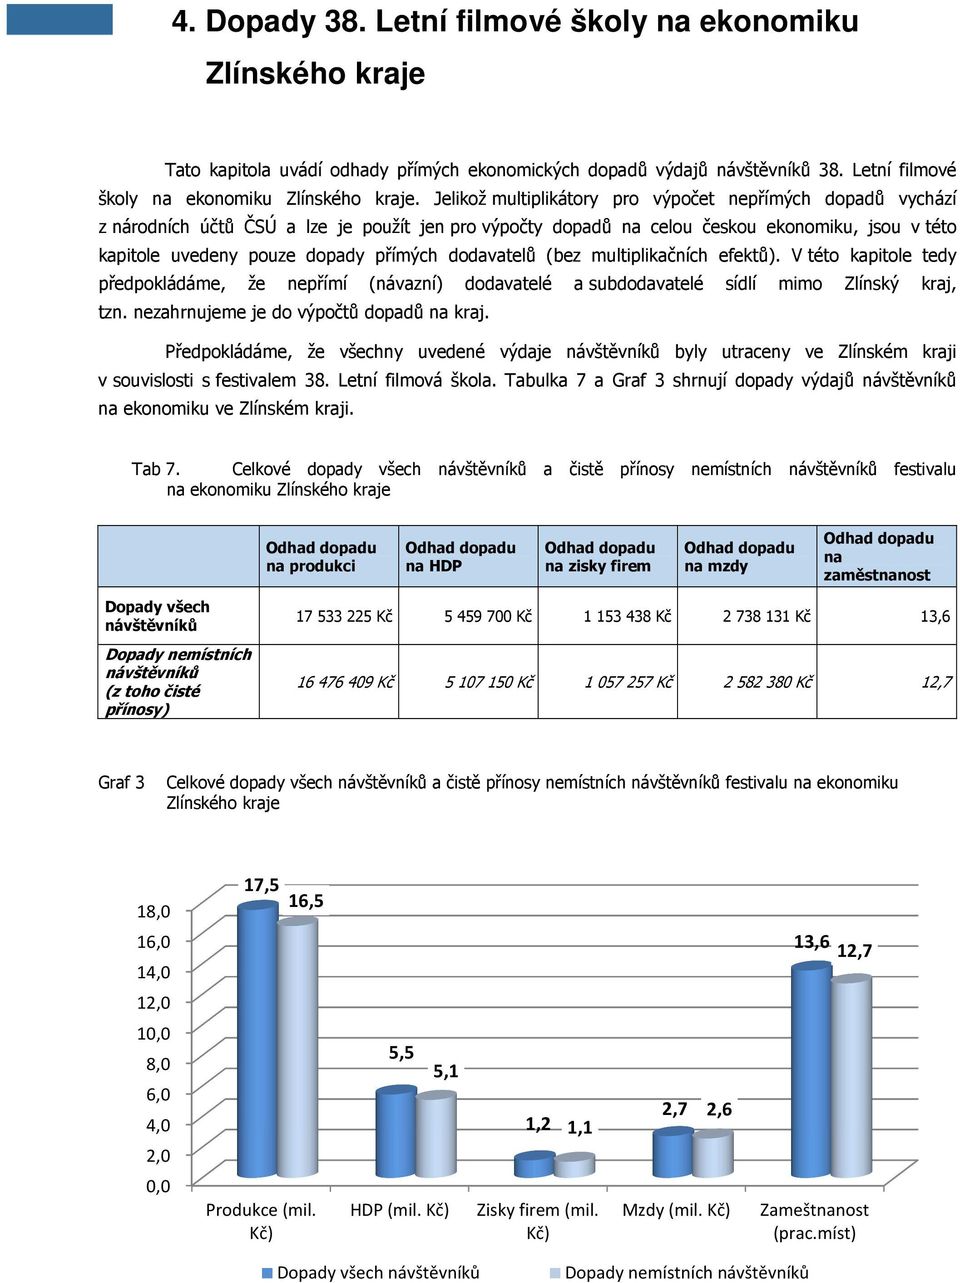 Jelikož multiplikátory pro výpočet nepřímých dopadů vychází z národních účtů ČSÚ a lze je použít jen pro výpočty dopadů na celou českou ekonomiku, jsou v této kapitole uvedeny pouze dopady přímých